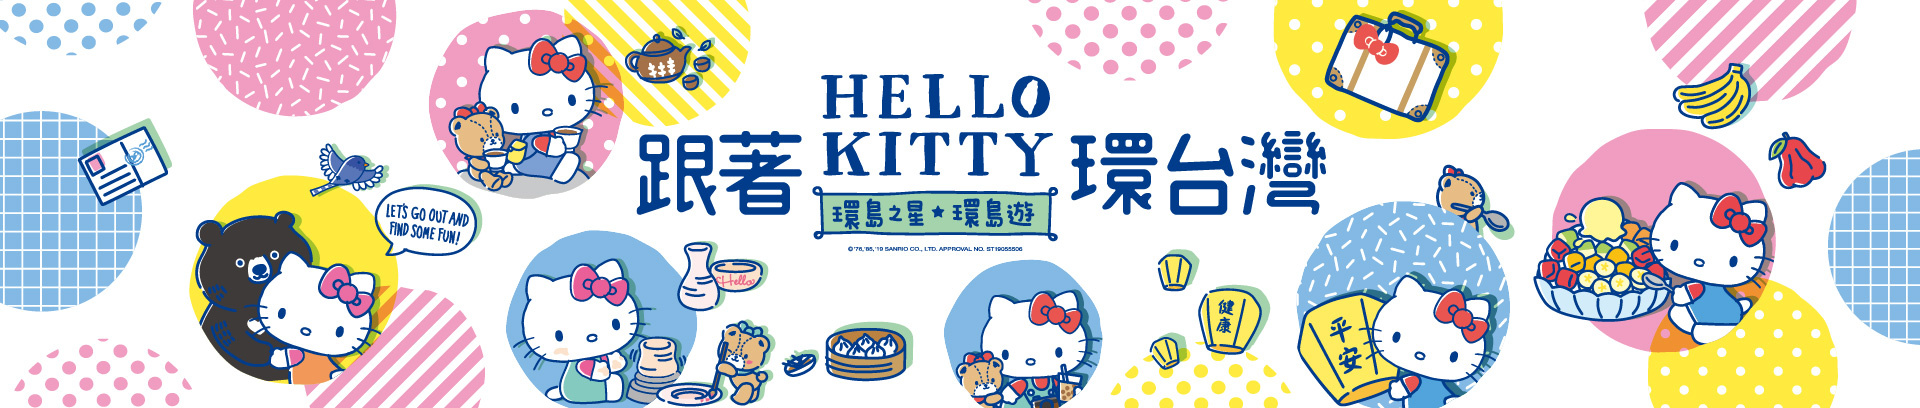 環島之星Hello Kitty繽紛列車,eztravel,易遊網